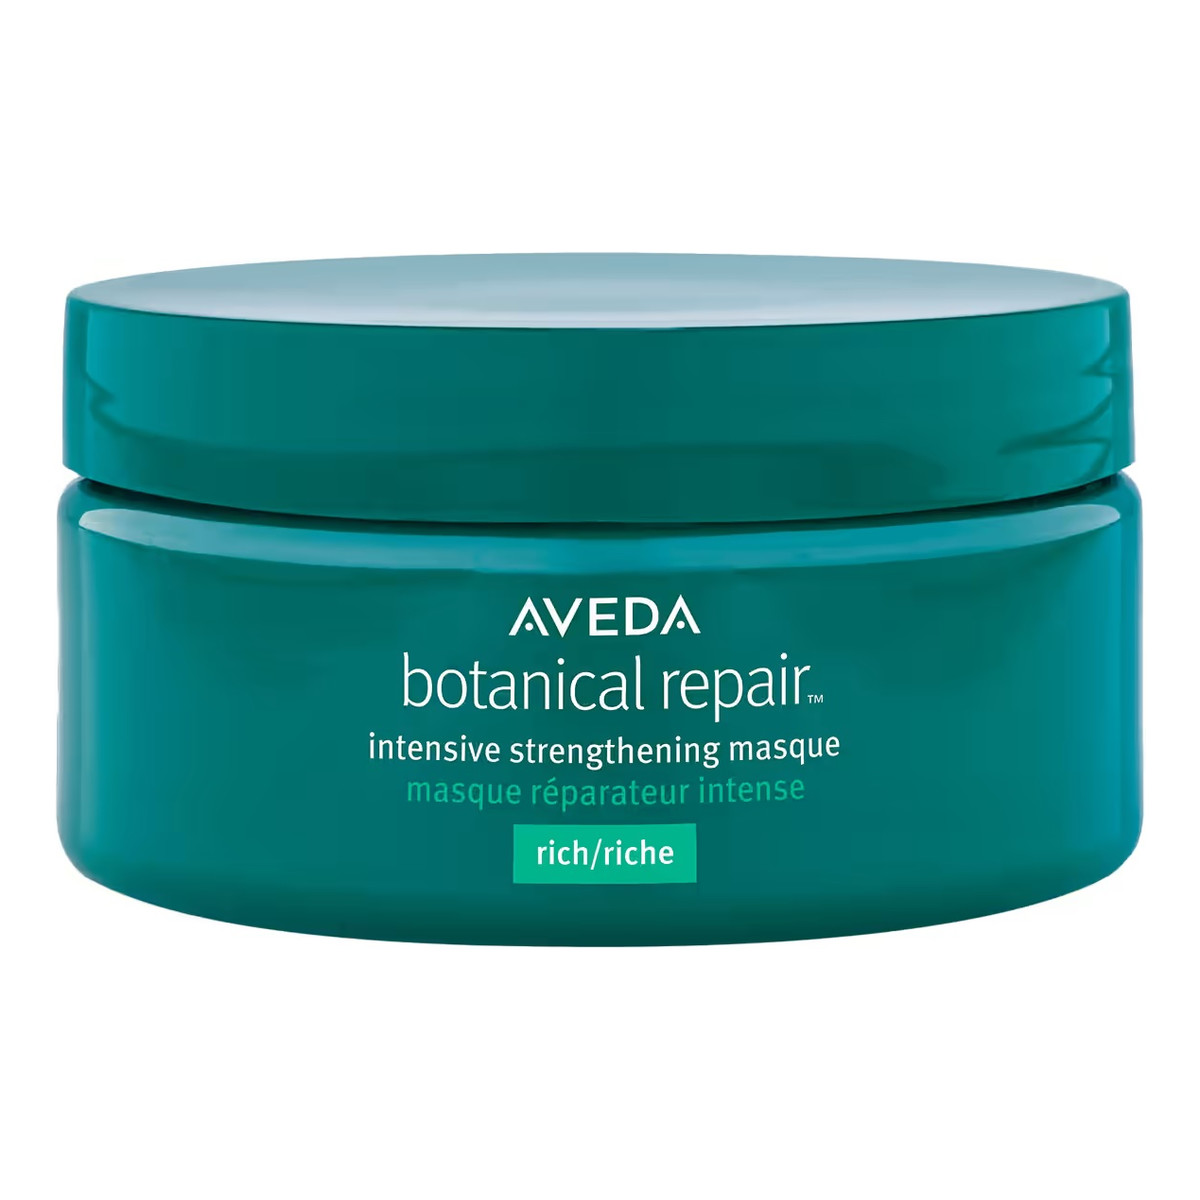 Aveda Botanical repair intensive strengthening masque rich intensywnie wzmacniająca maska do włosów 200ml